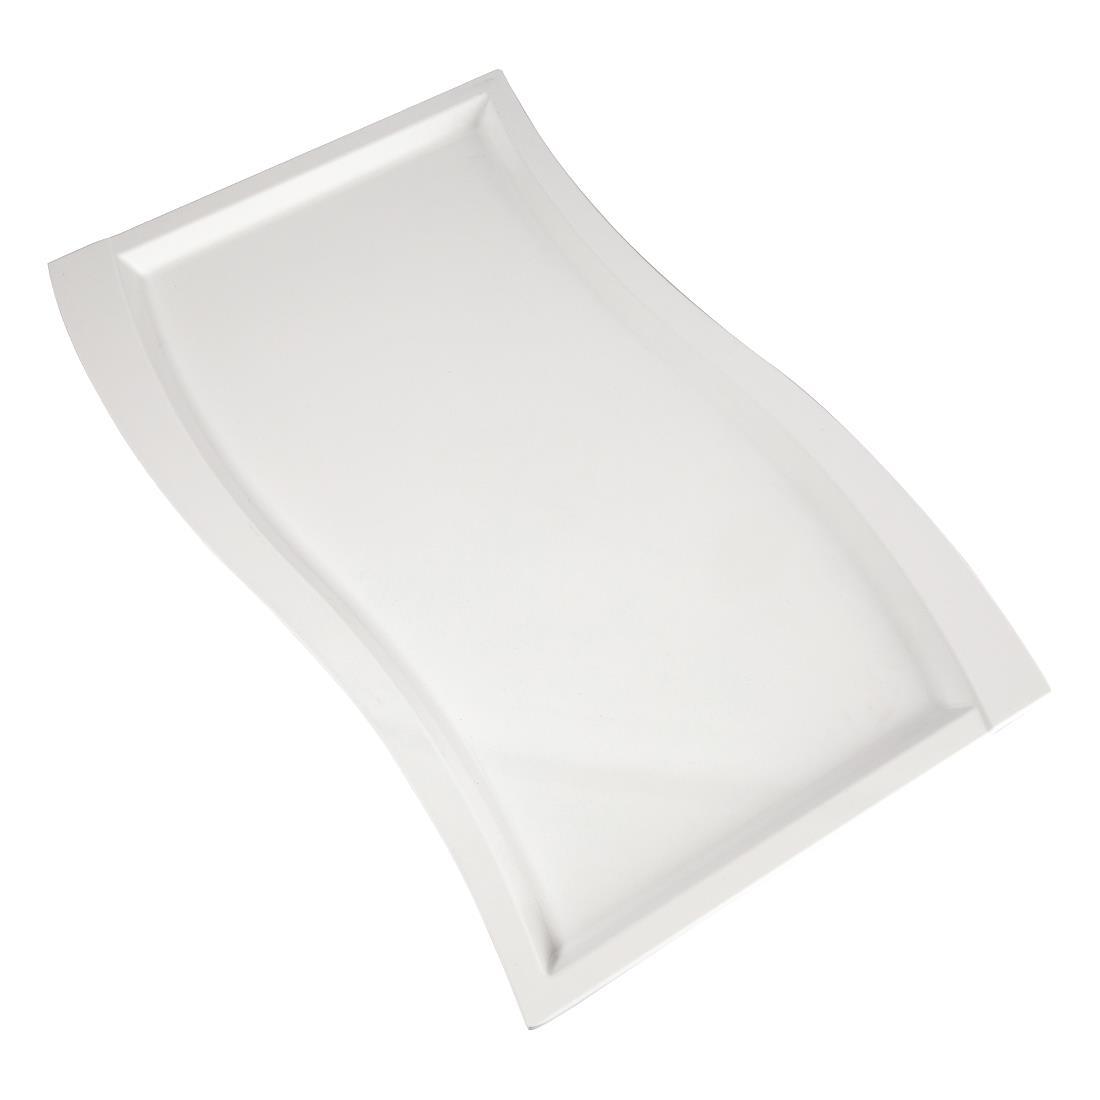 APS Wave Melamine Platter White GN 1/1 - GK826  - 1